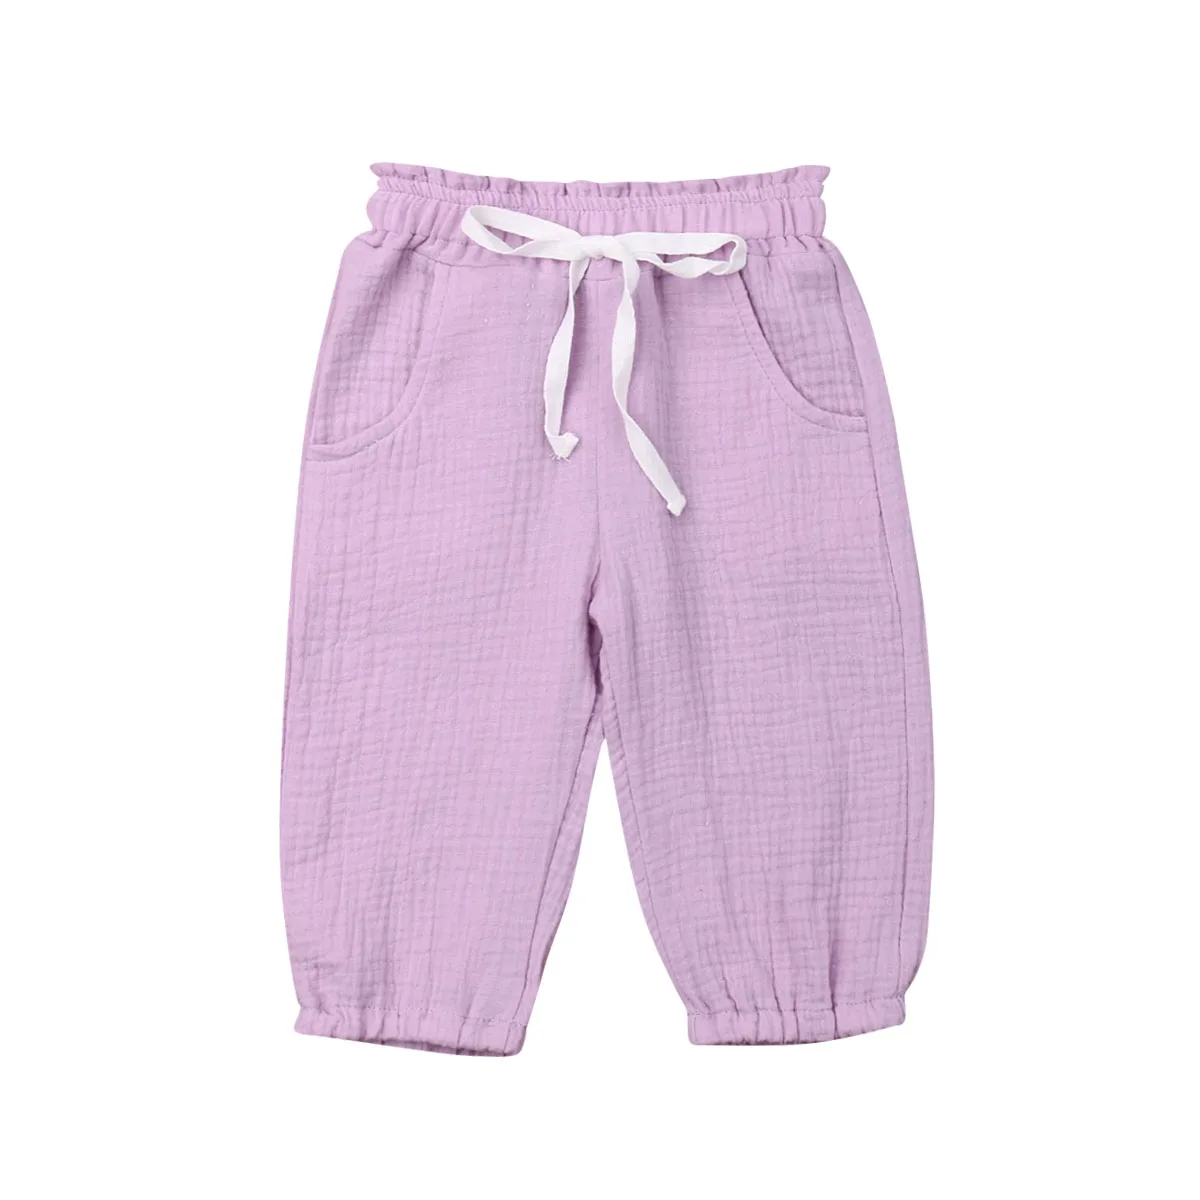 PUDCOCO поп-малыш детская одежда для девочек одноцветное пены хлопок мнется шаровары брюки модные леггинсы в повседневном стиле, брюки От 0 до 4 лет - Цвет: Фиолетовый